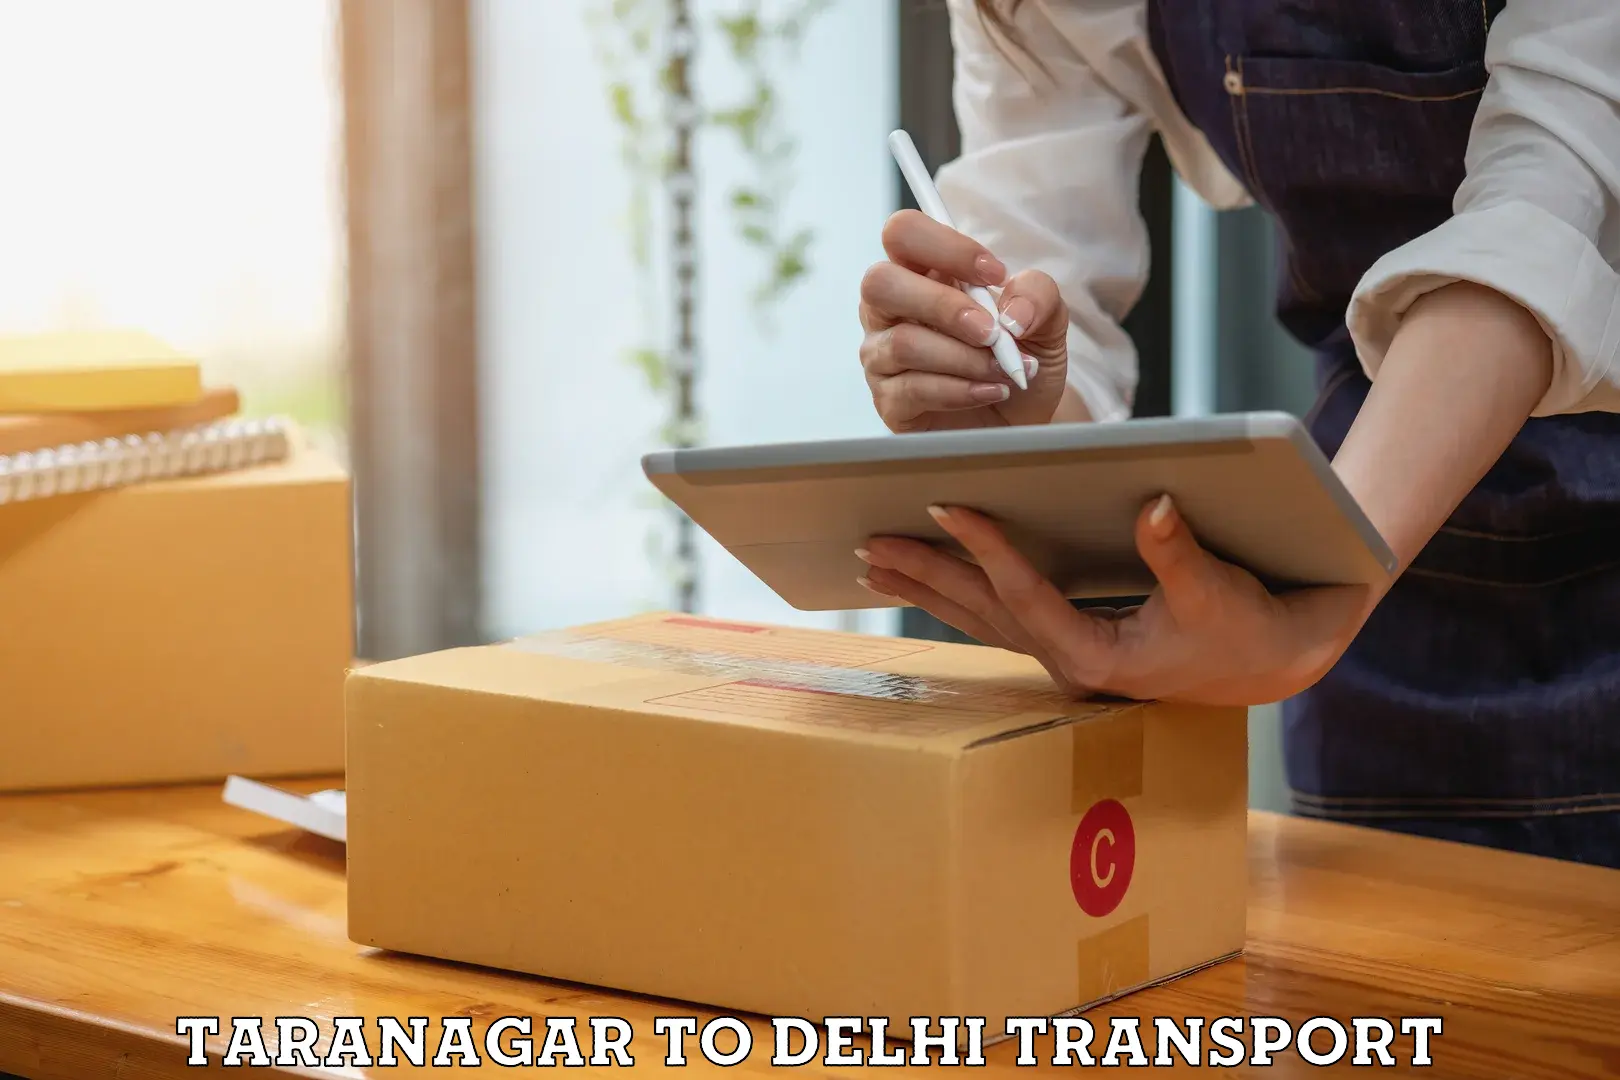 Express transport services Taranagar to NCR